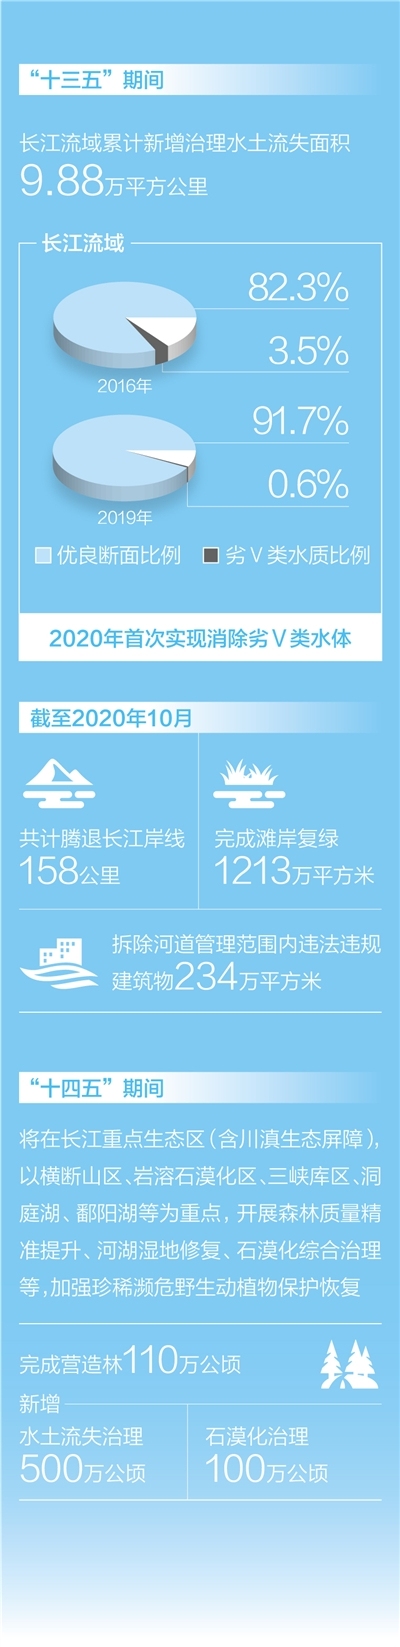 重庆落实长江保护法——筑生态屏障 让水清岸美